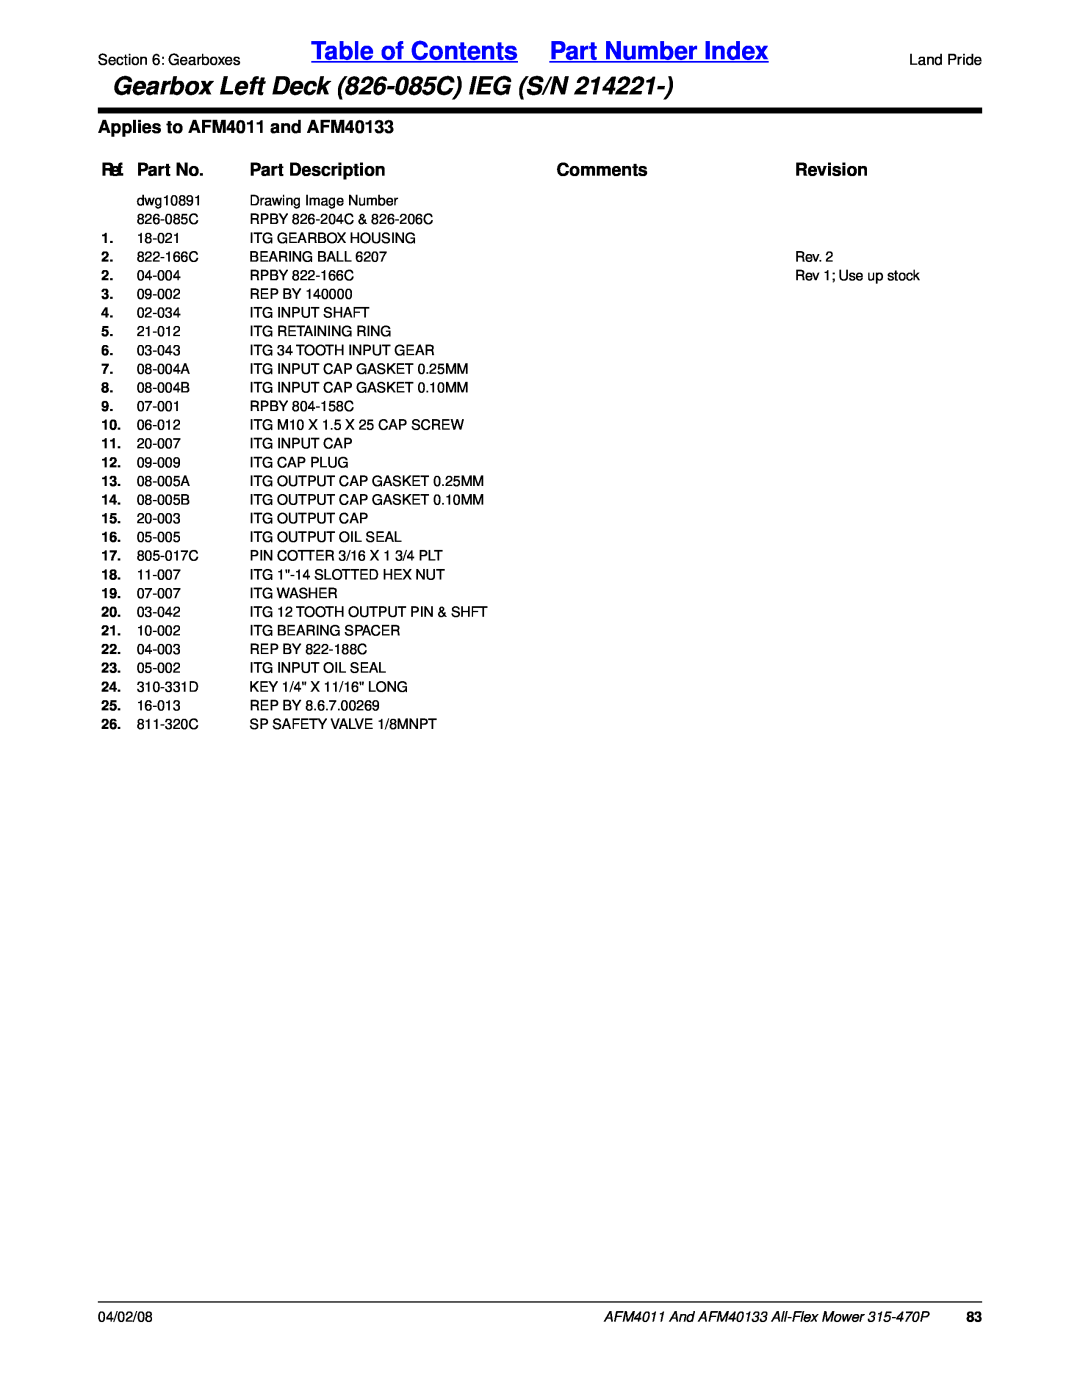 Land Pride AFM40133 Table of Contents Part Number Index, Gearbox Left Deck 826-085CIEG S/N, Ref. Part No, Part Description 